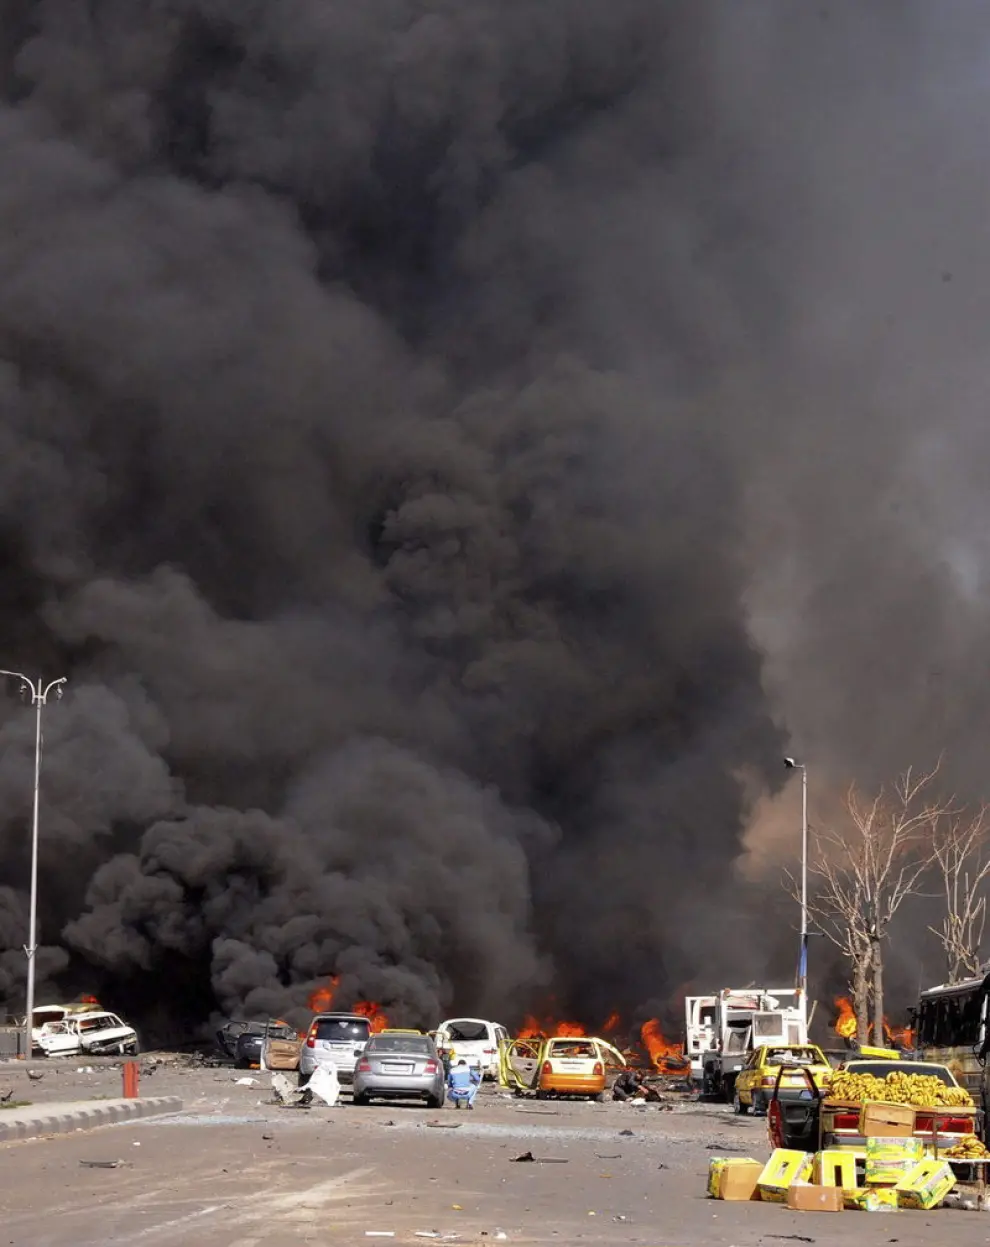 Al menos 53 personas han muerto por la explosión de un coche bomba en el centro de la ciudad.